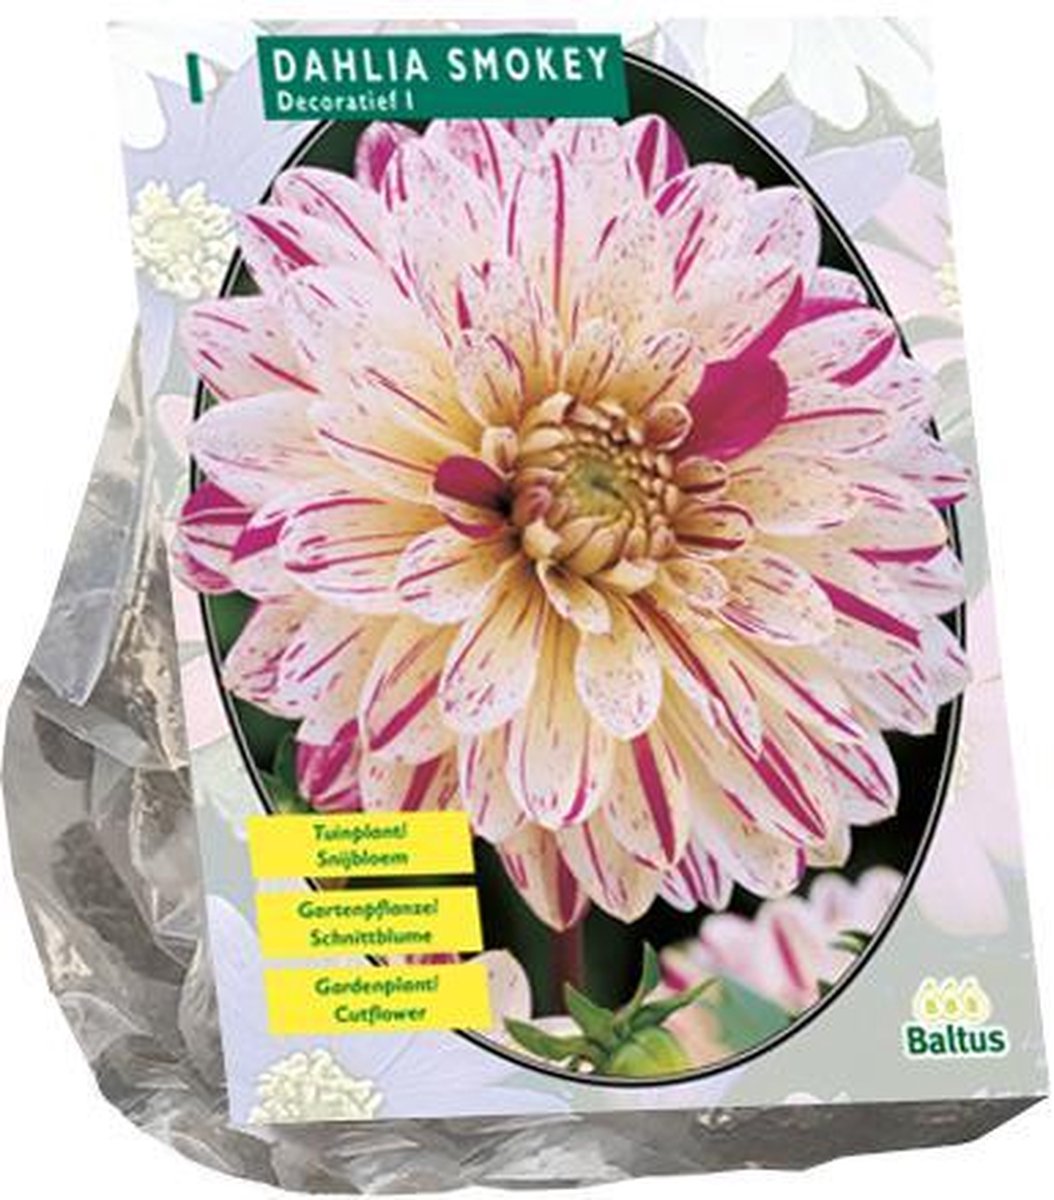 Dahlia Smokey per 1 | decoratief dahlia | Hoge en grote bloemen | Zomerbloeier | Pluktuin | Baltus Bloembollen